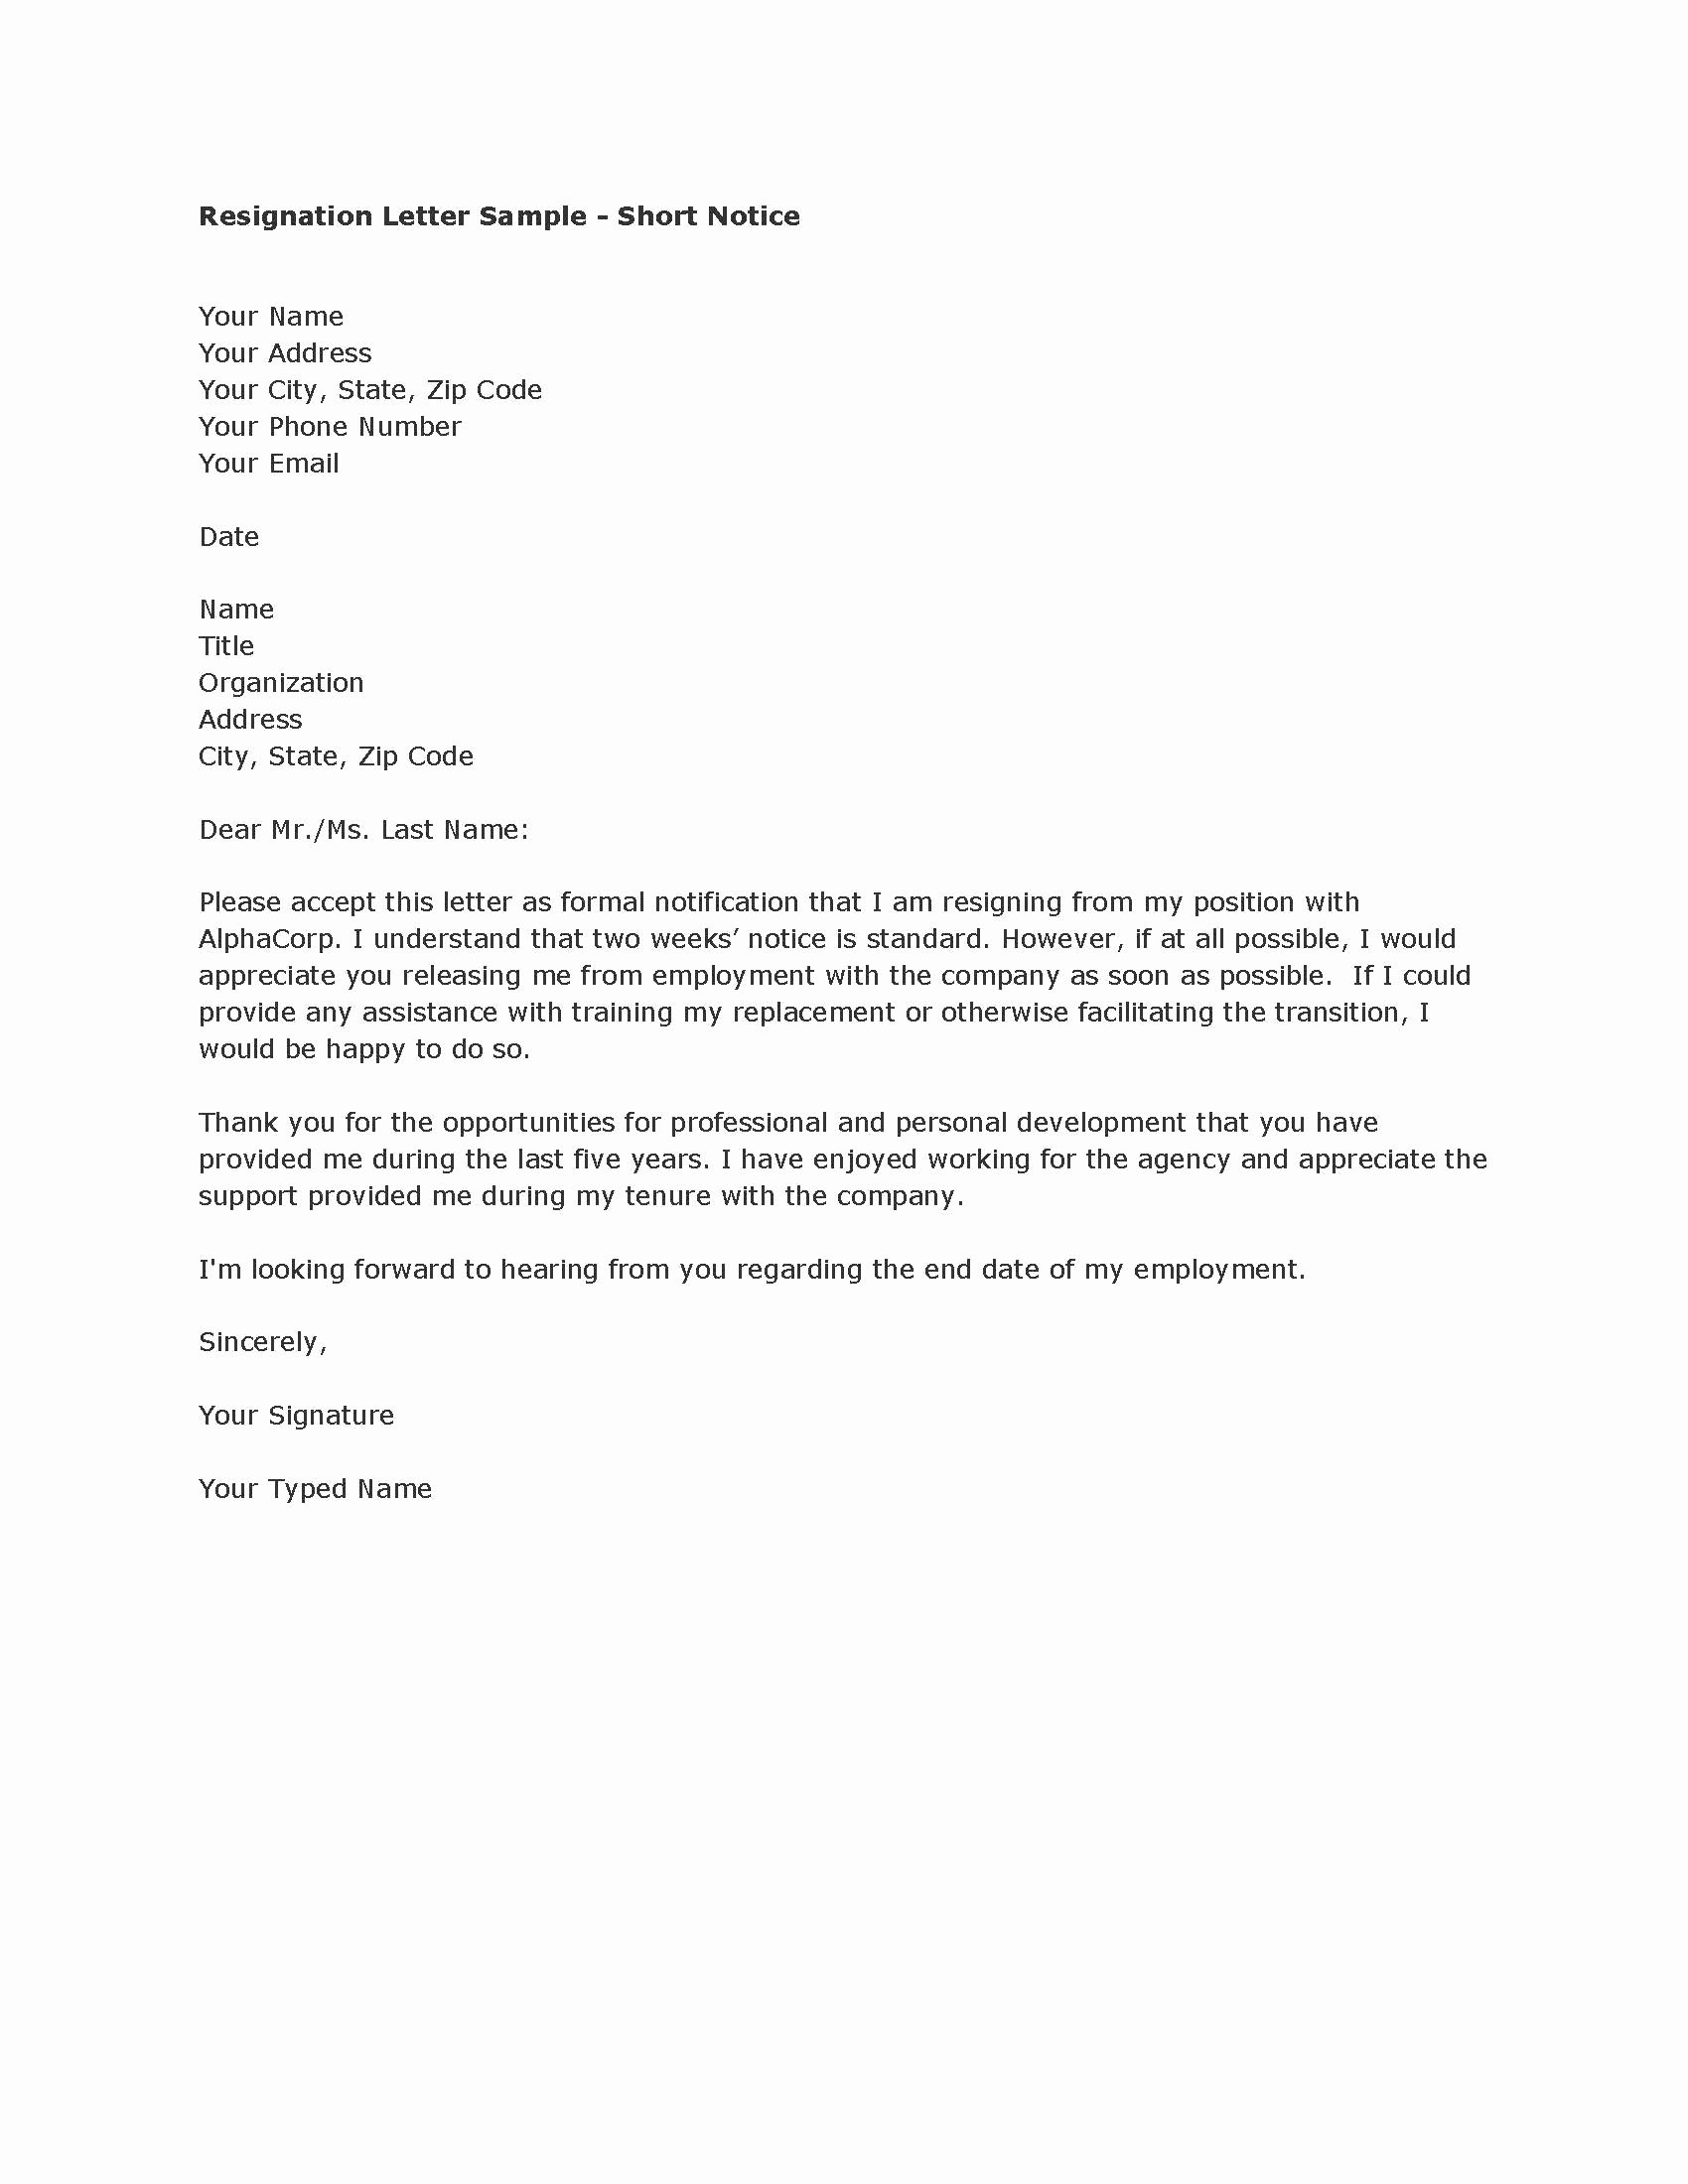 Resignation Letter Short Notice Lovely Resignation Letter Samples Short Notice